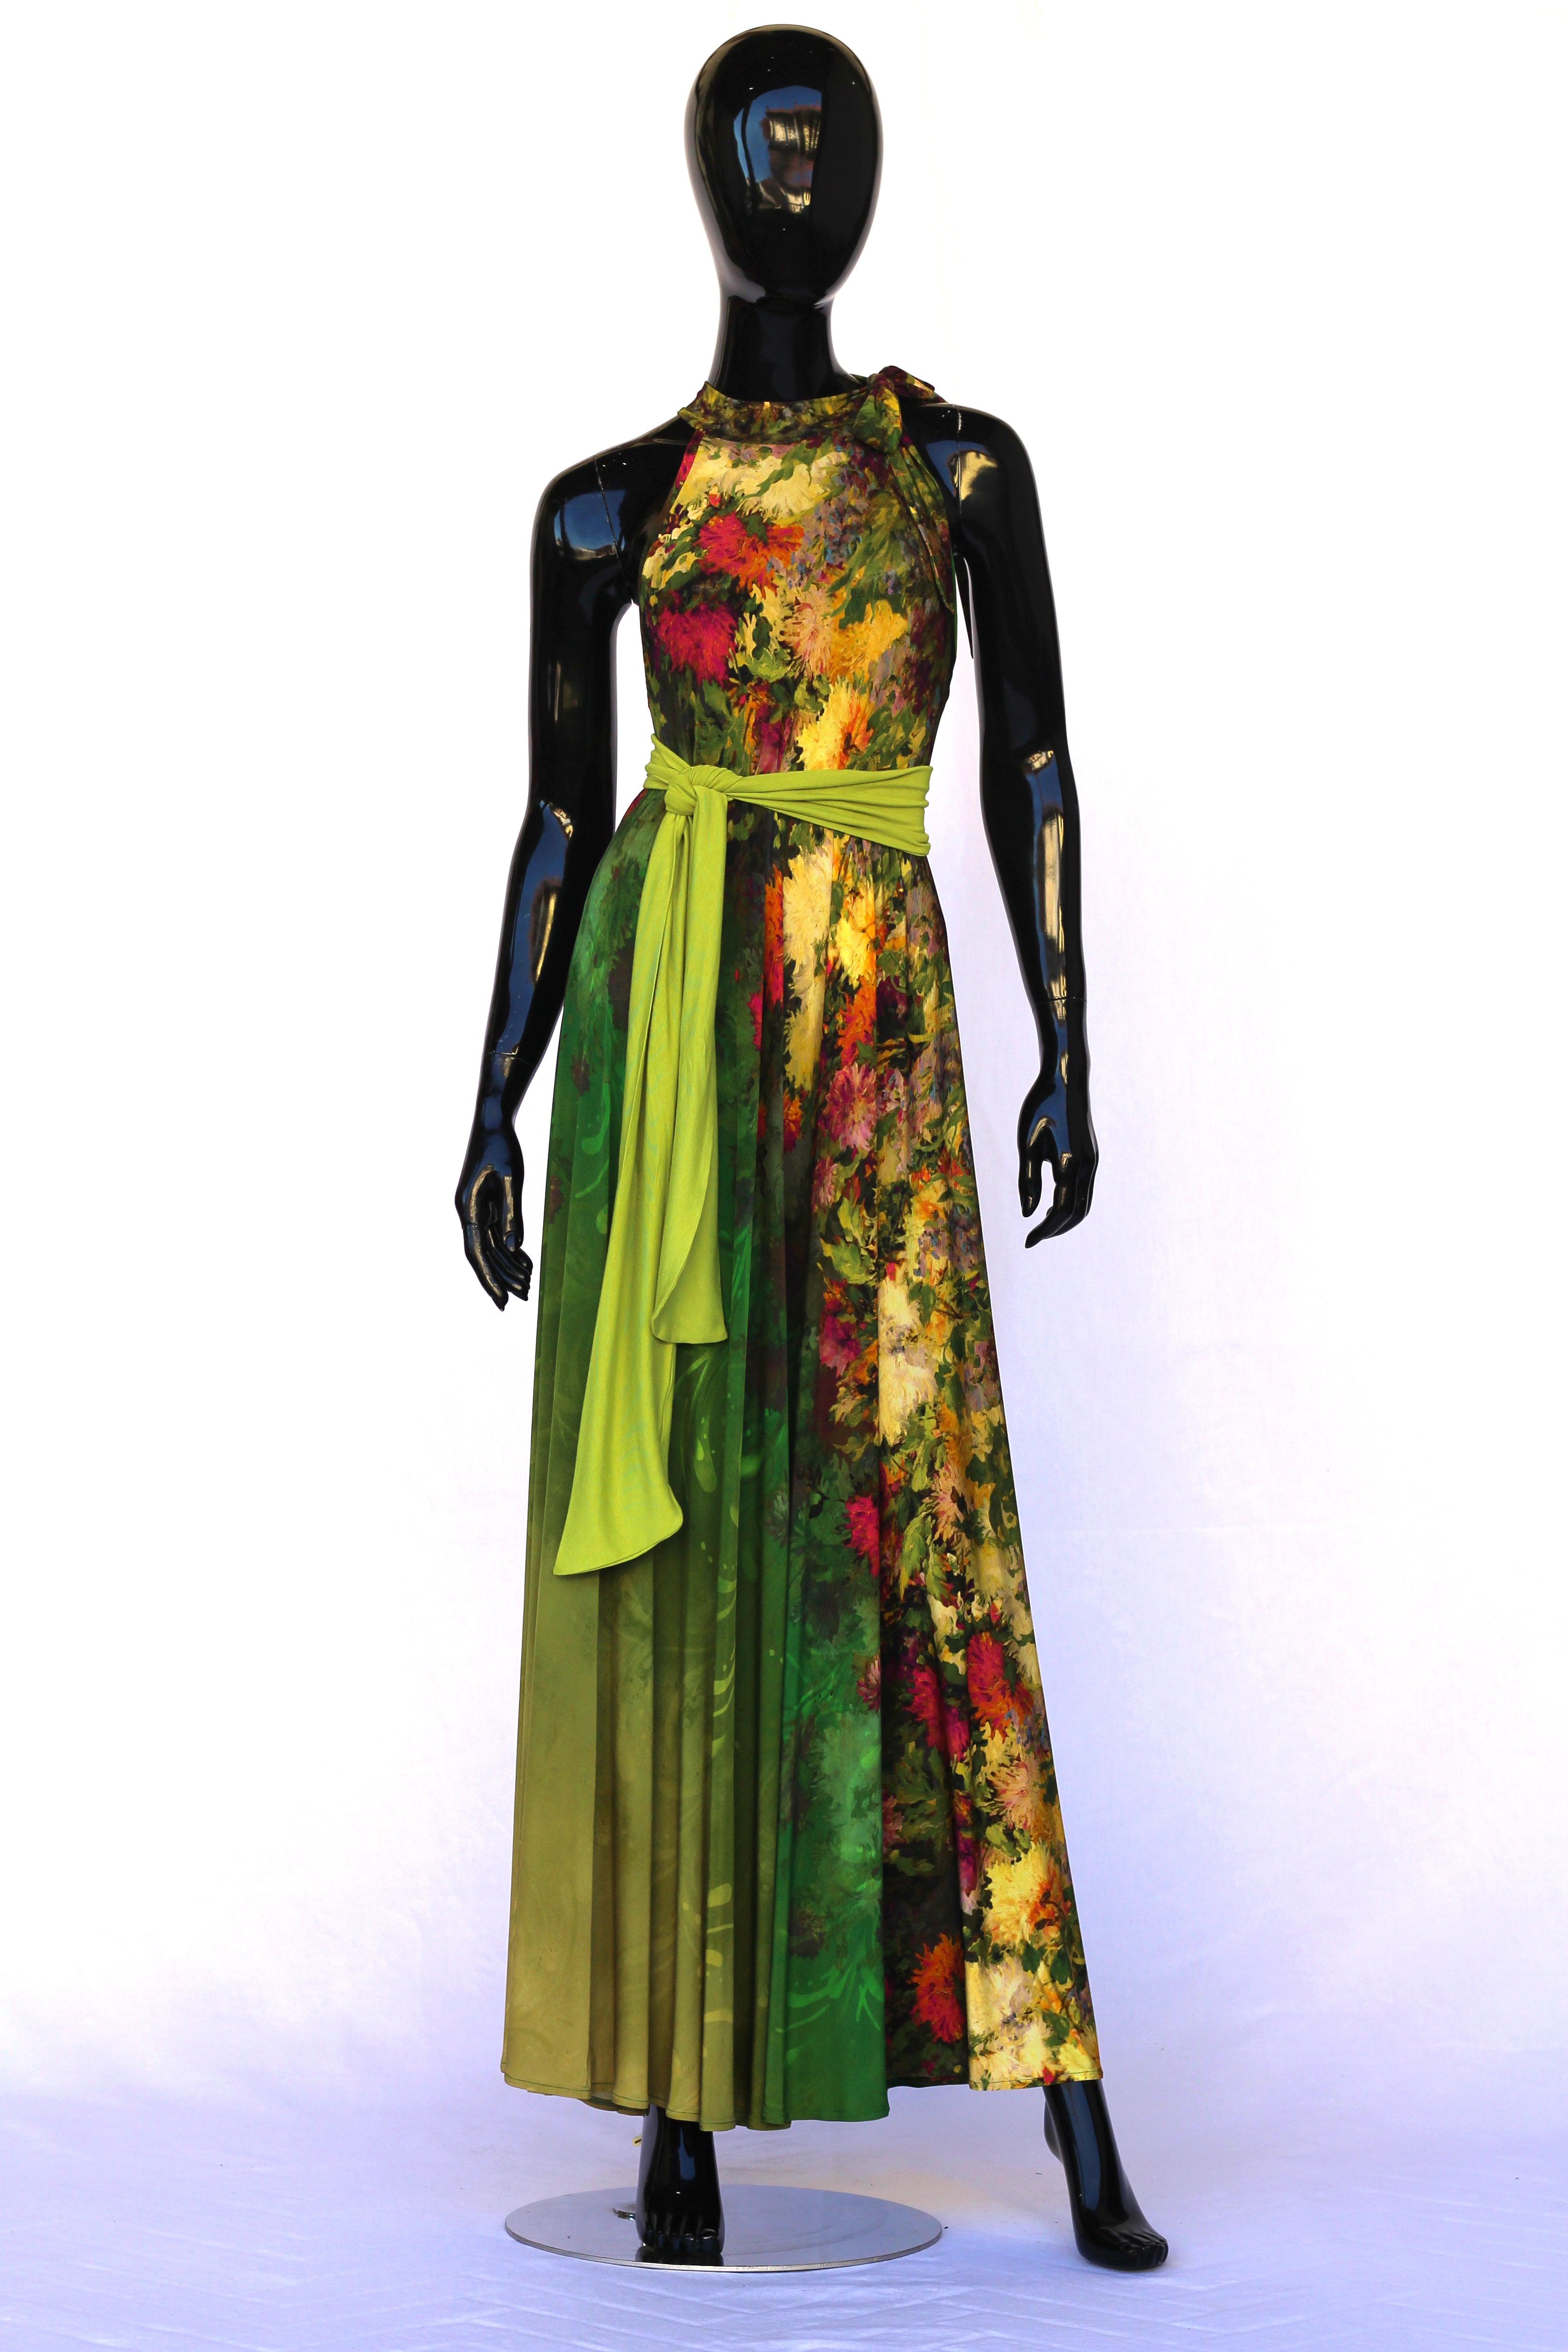 modello-fioritura-coolcat-italia-abito-lungo-jersey-stampato-con-fiori con cintura verde